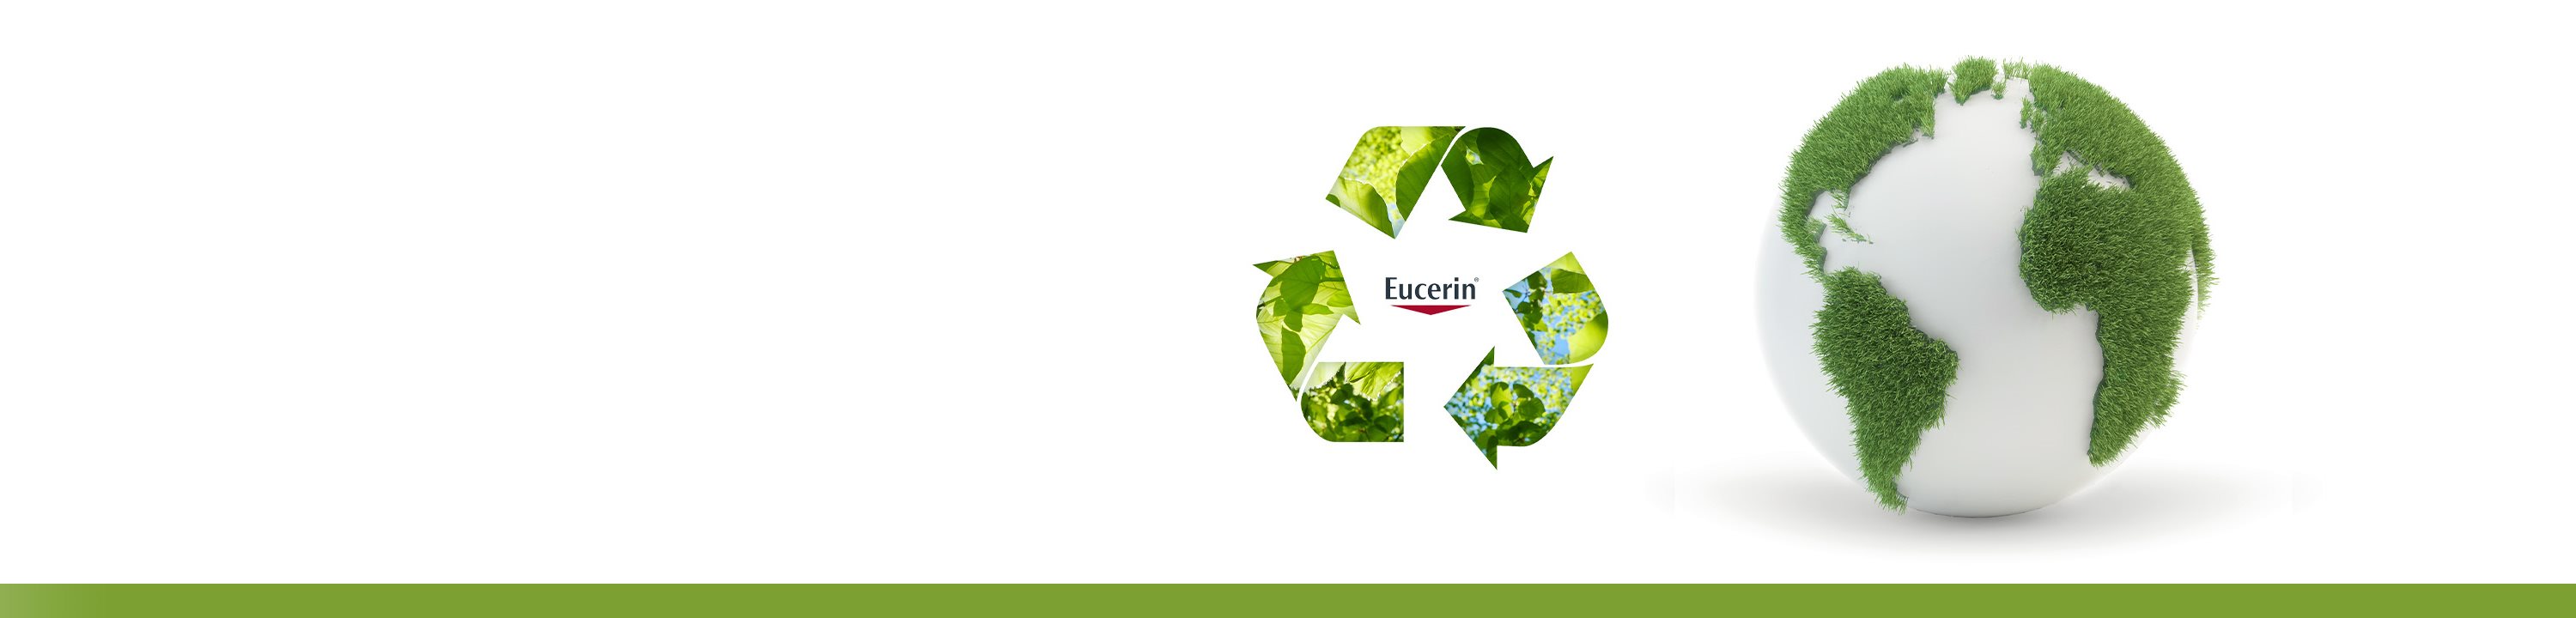 Udržitelnost značky Eucerin